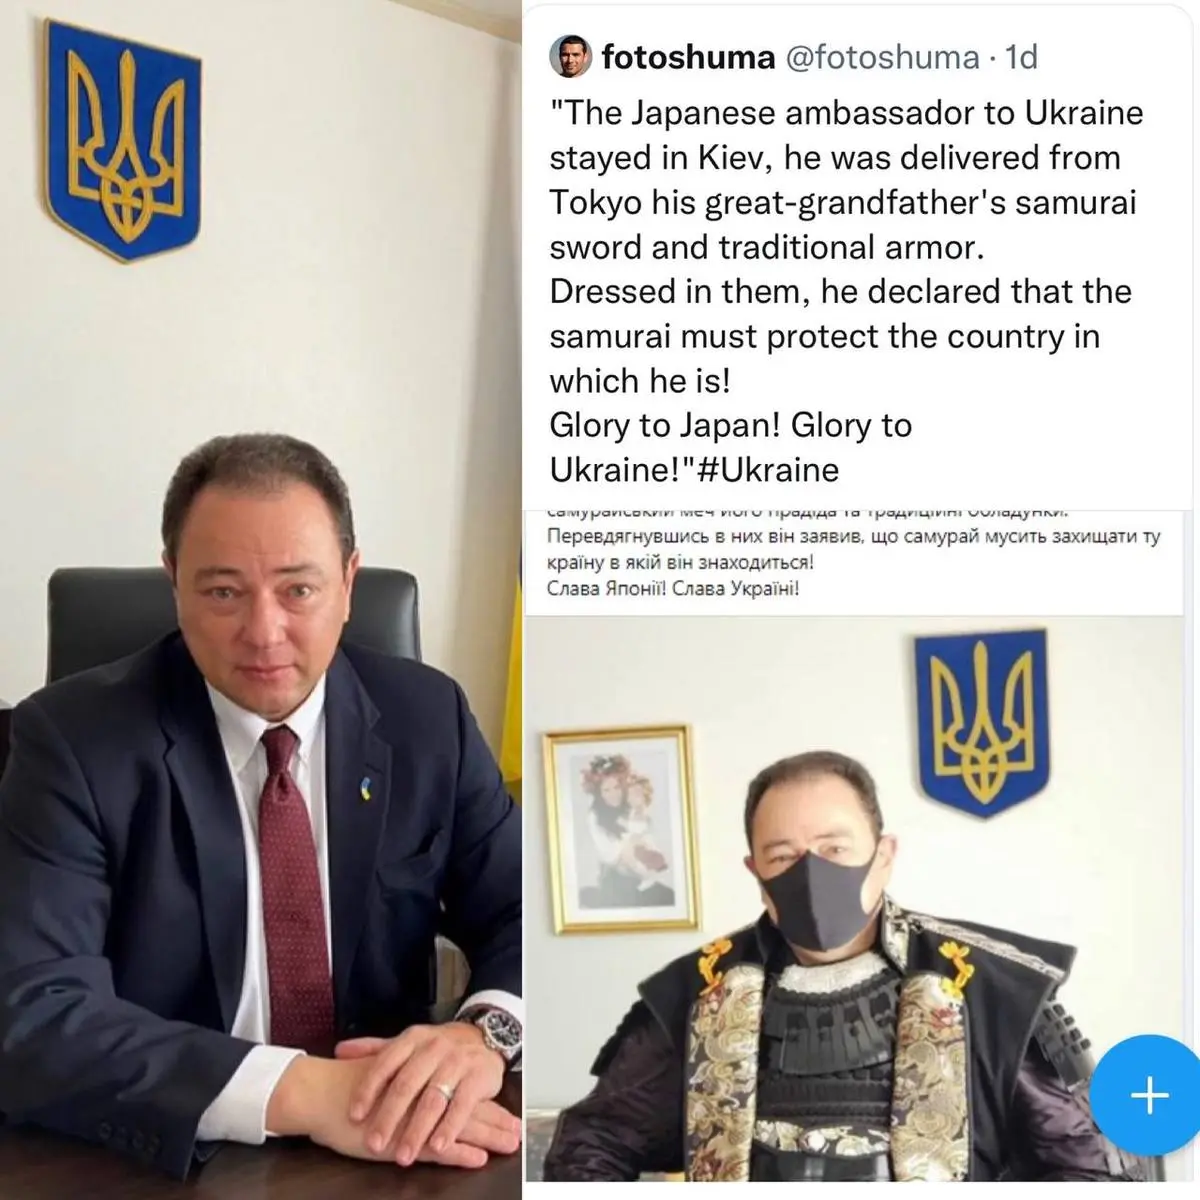 آن سامورایی، سفیر ژاپن در اوکراین نبود، سفیر اوکراین در ژاپن بود!+تصویر